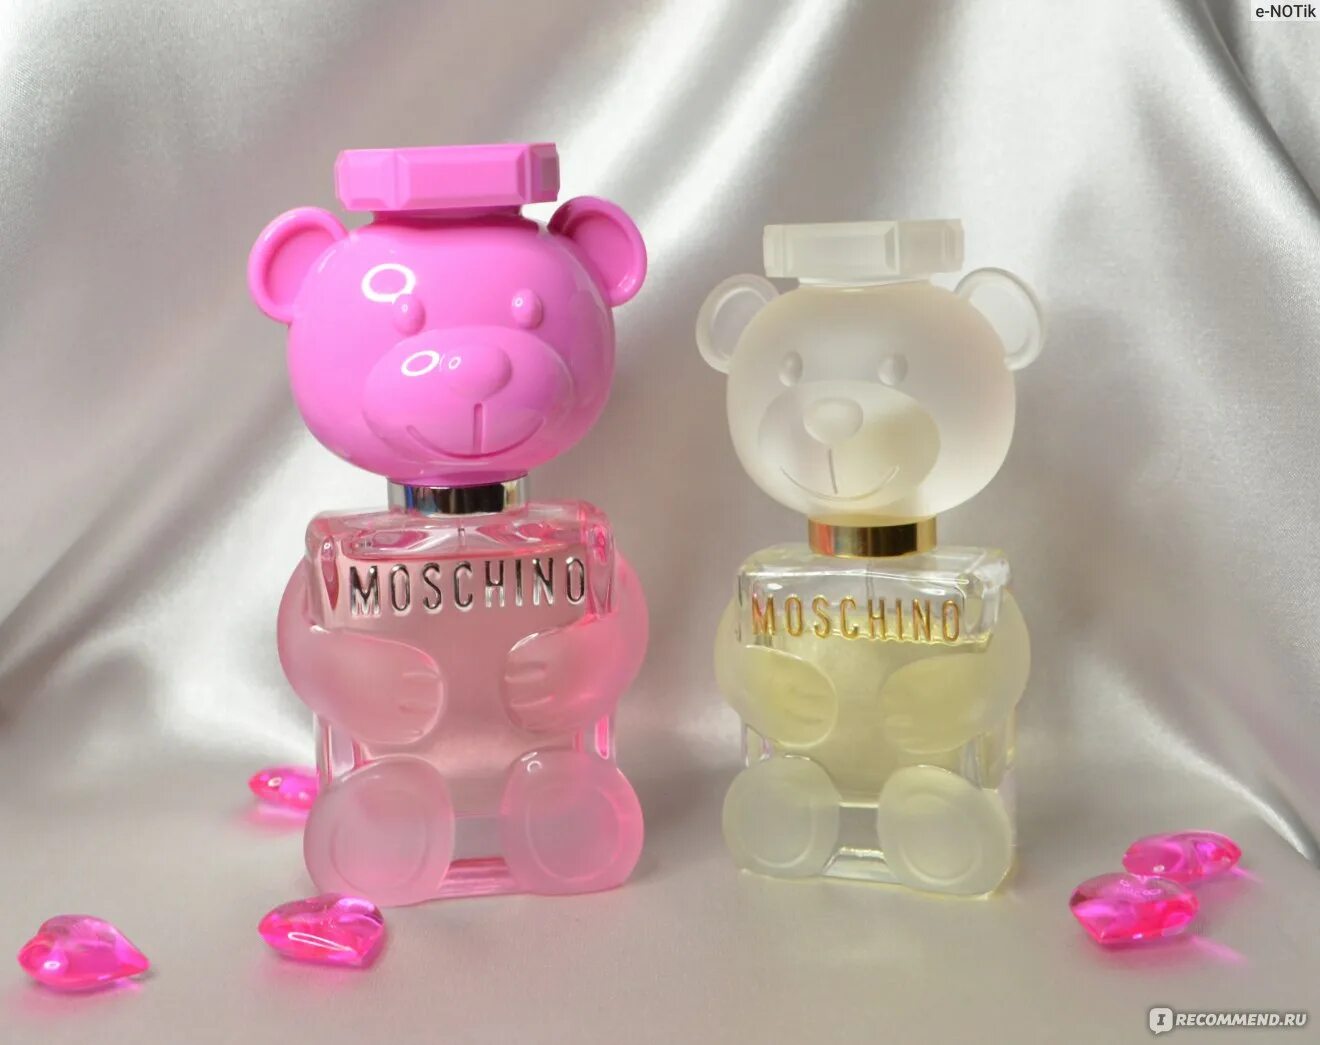 Moschino "Toy 2 Bubble Gum Eau de Toilette" 100 ml. Moschino Toy 2. Moschino Perfume Toy 2. Moschino Toy 2 Bubble Gum 5 мл. Москино духи медведь